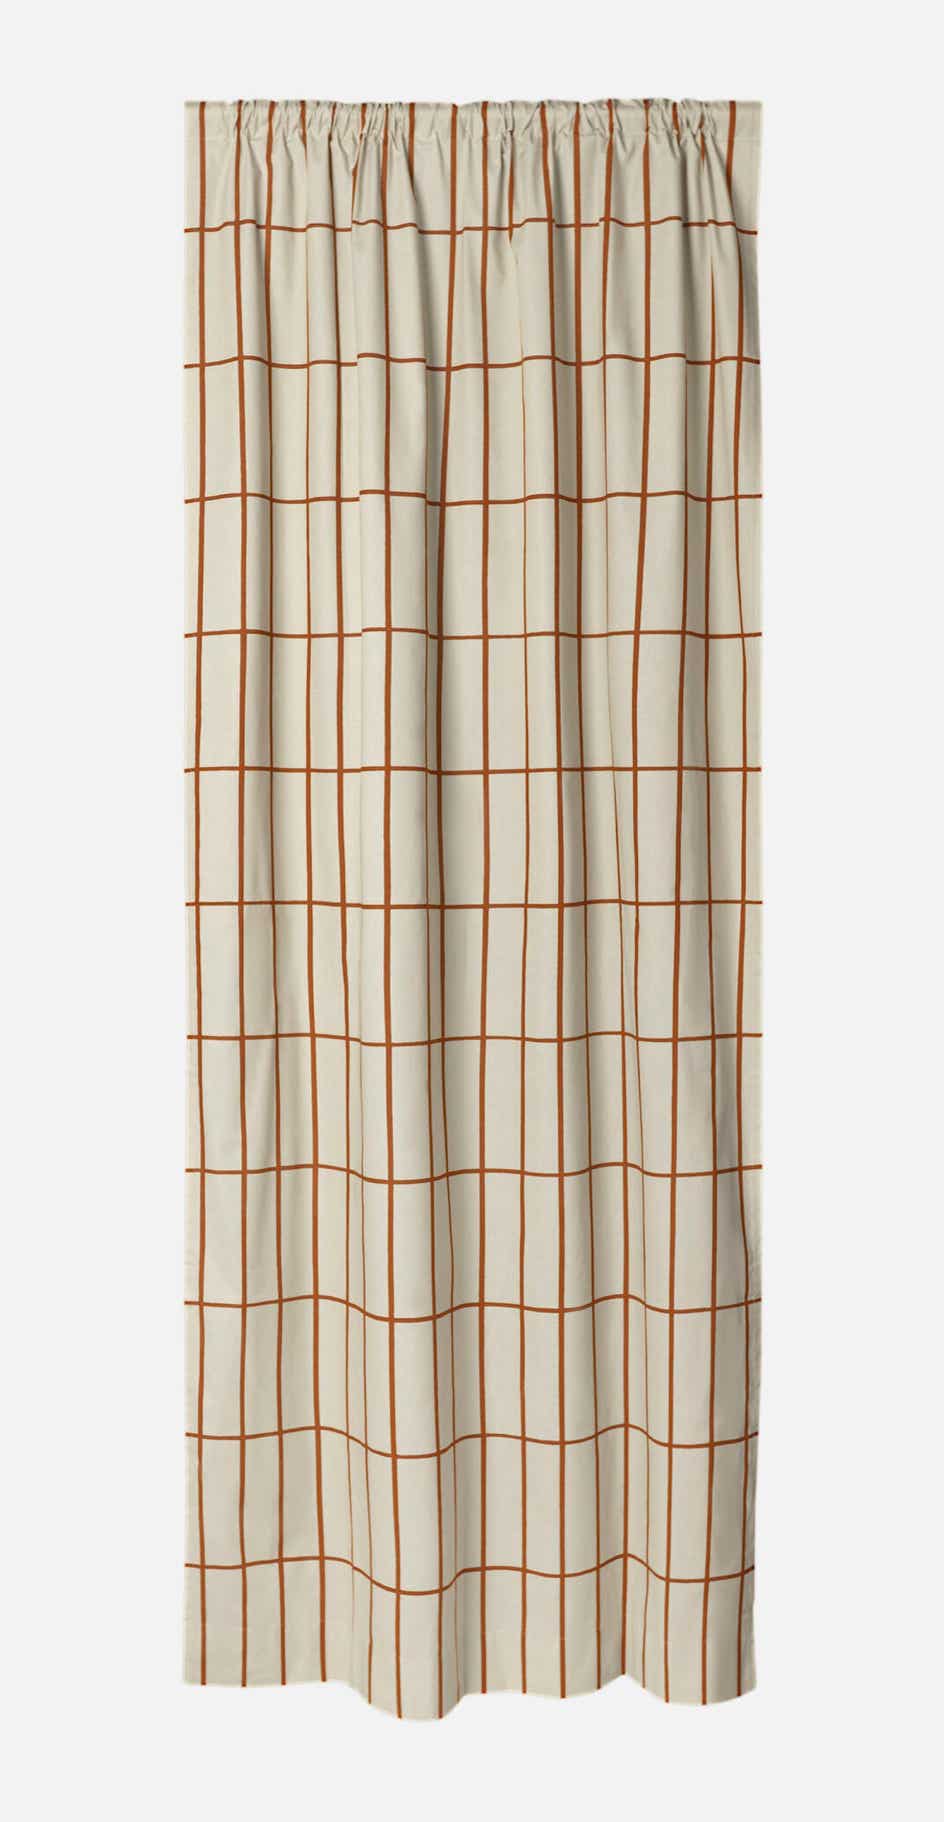 Tiiliskivi 883 – cotton – curtain